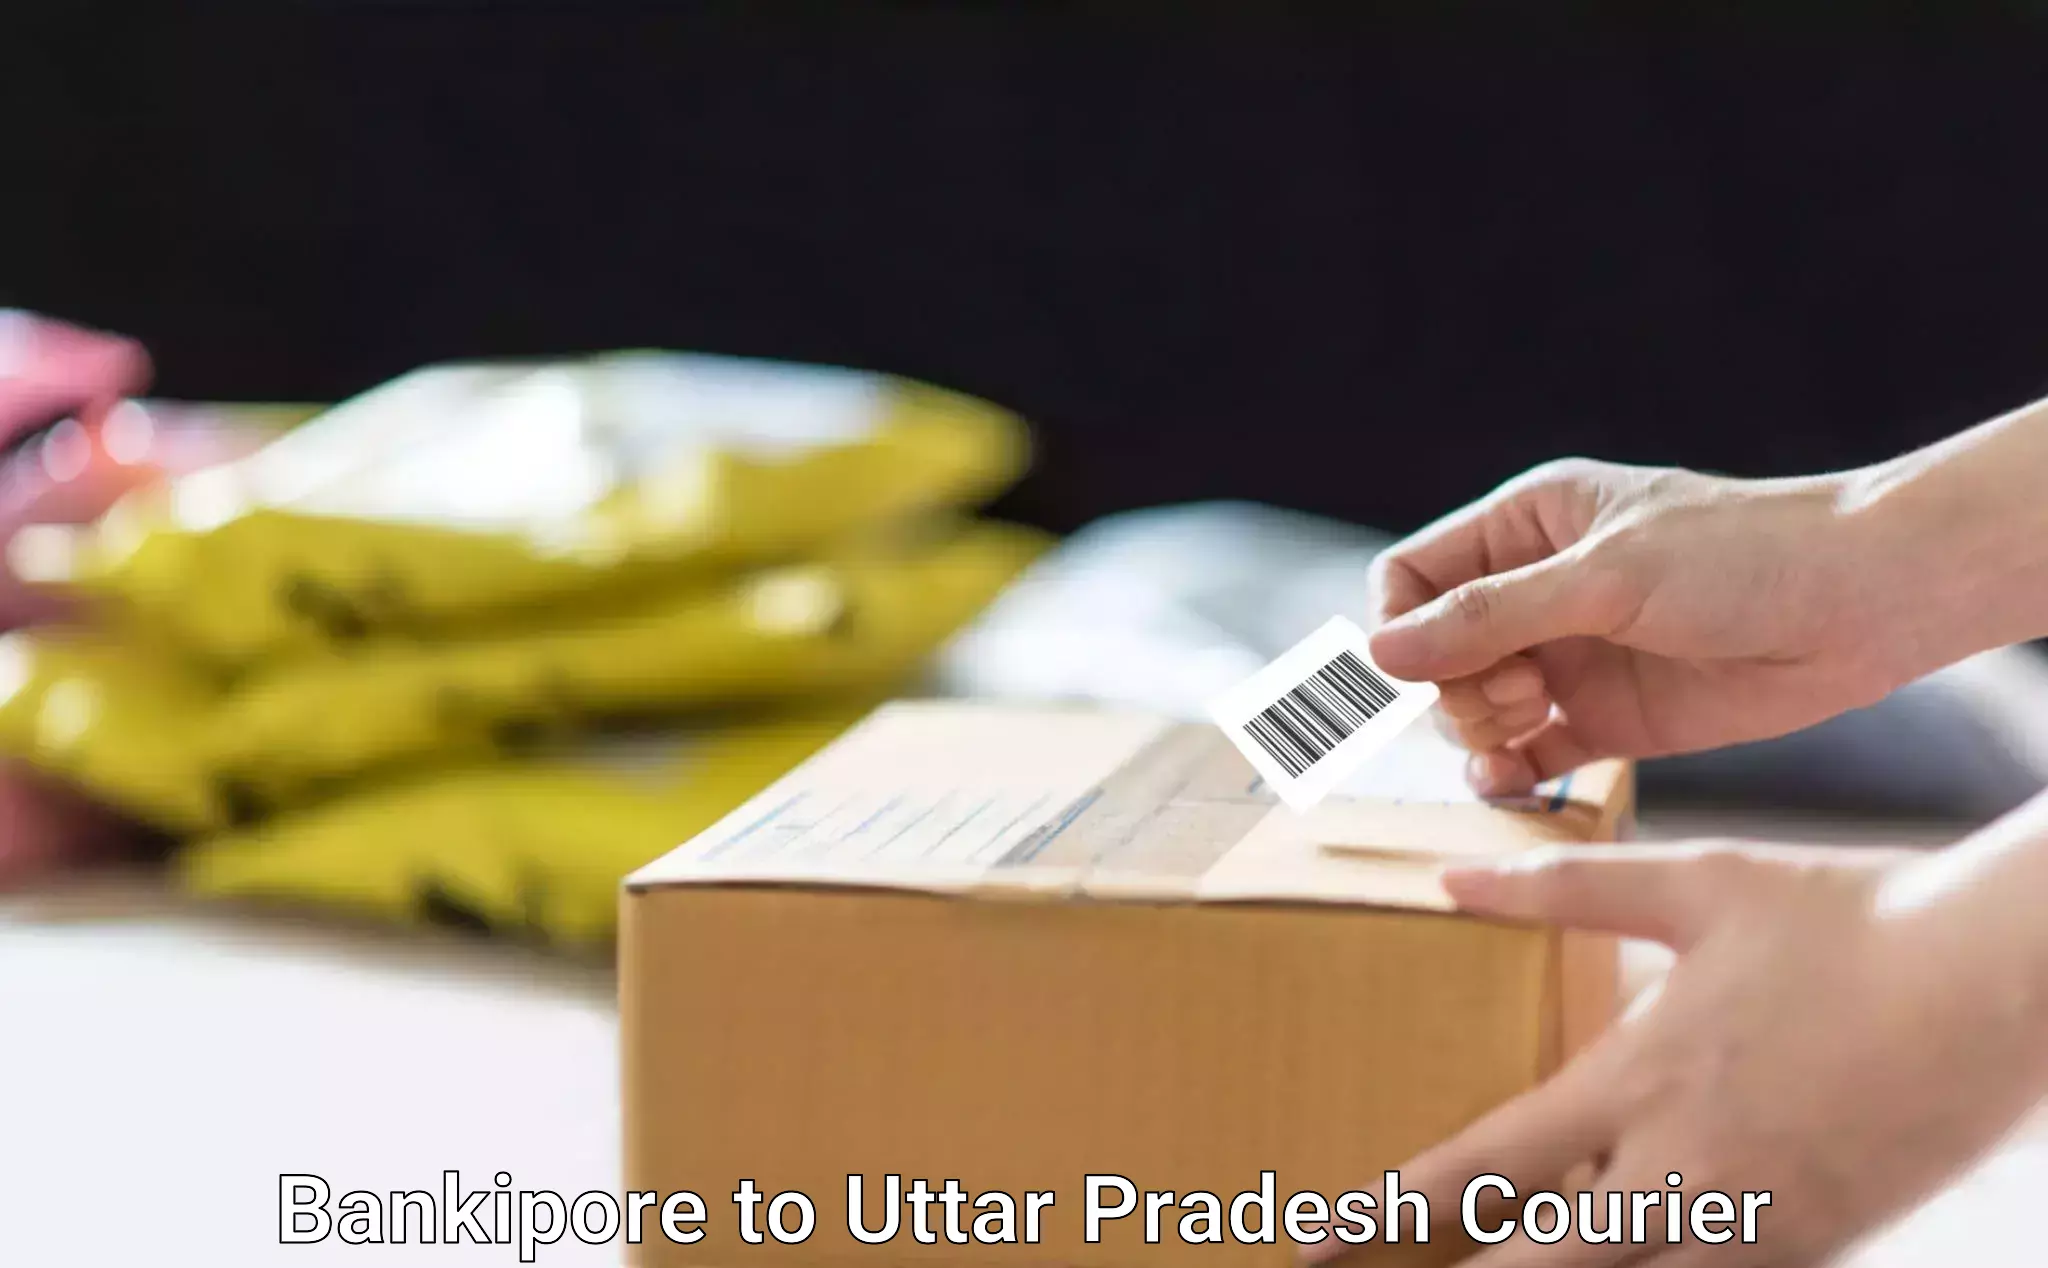 Furniture moving service in Bankipore to Uttar Pradesh